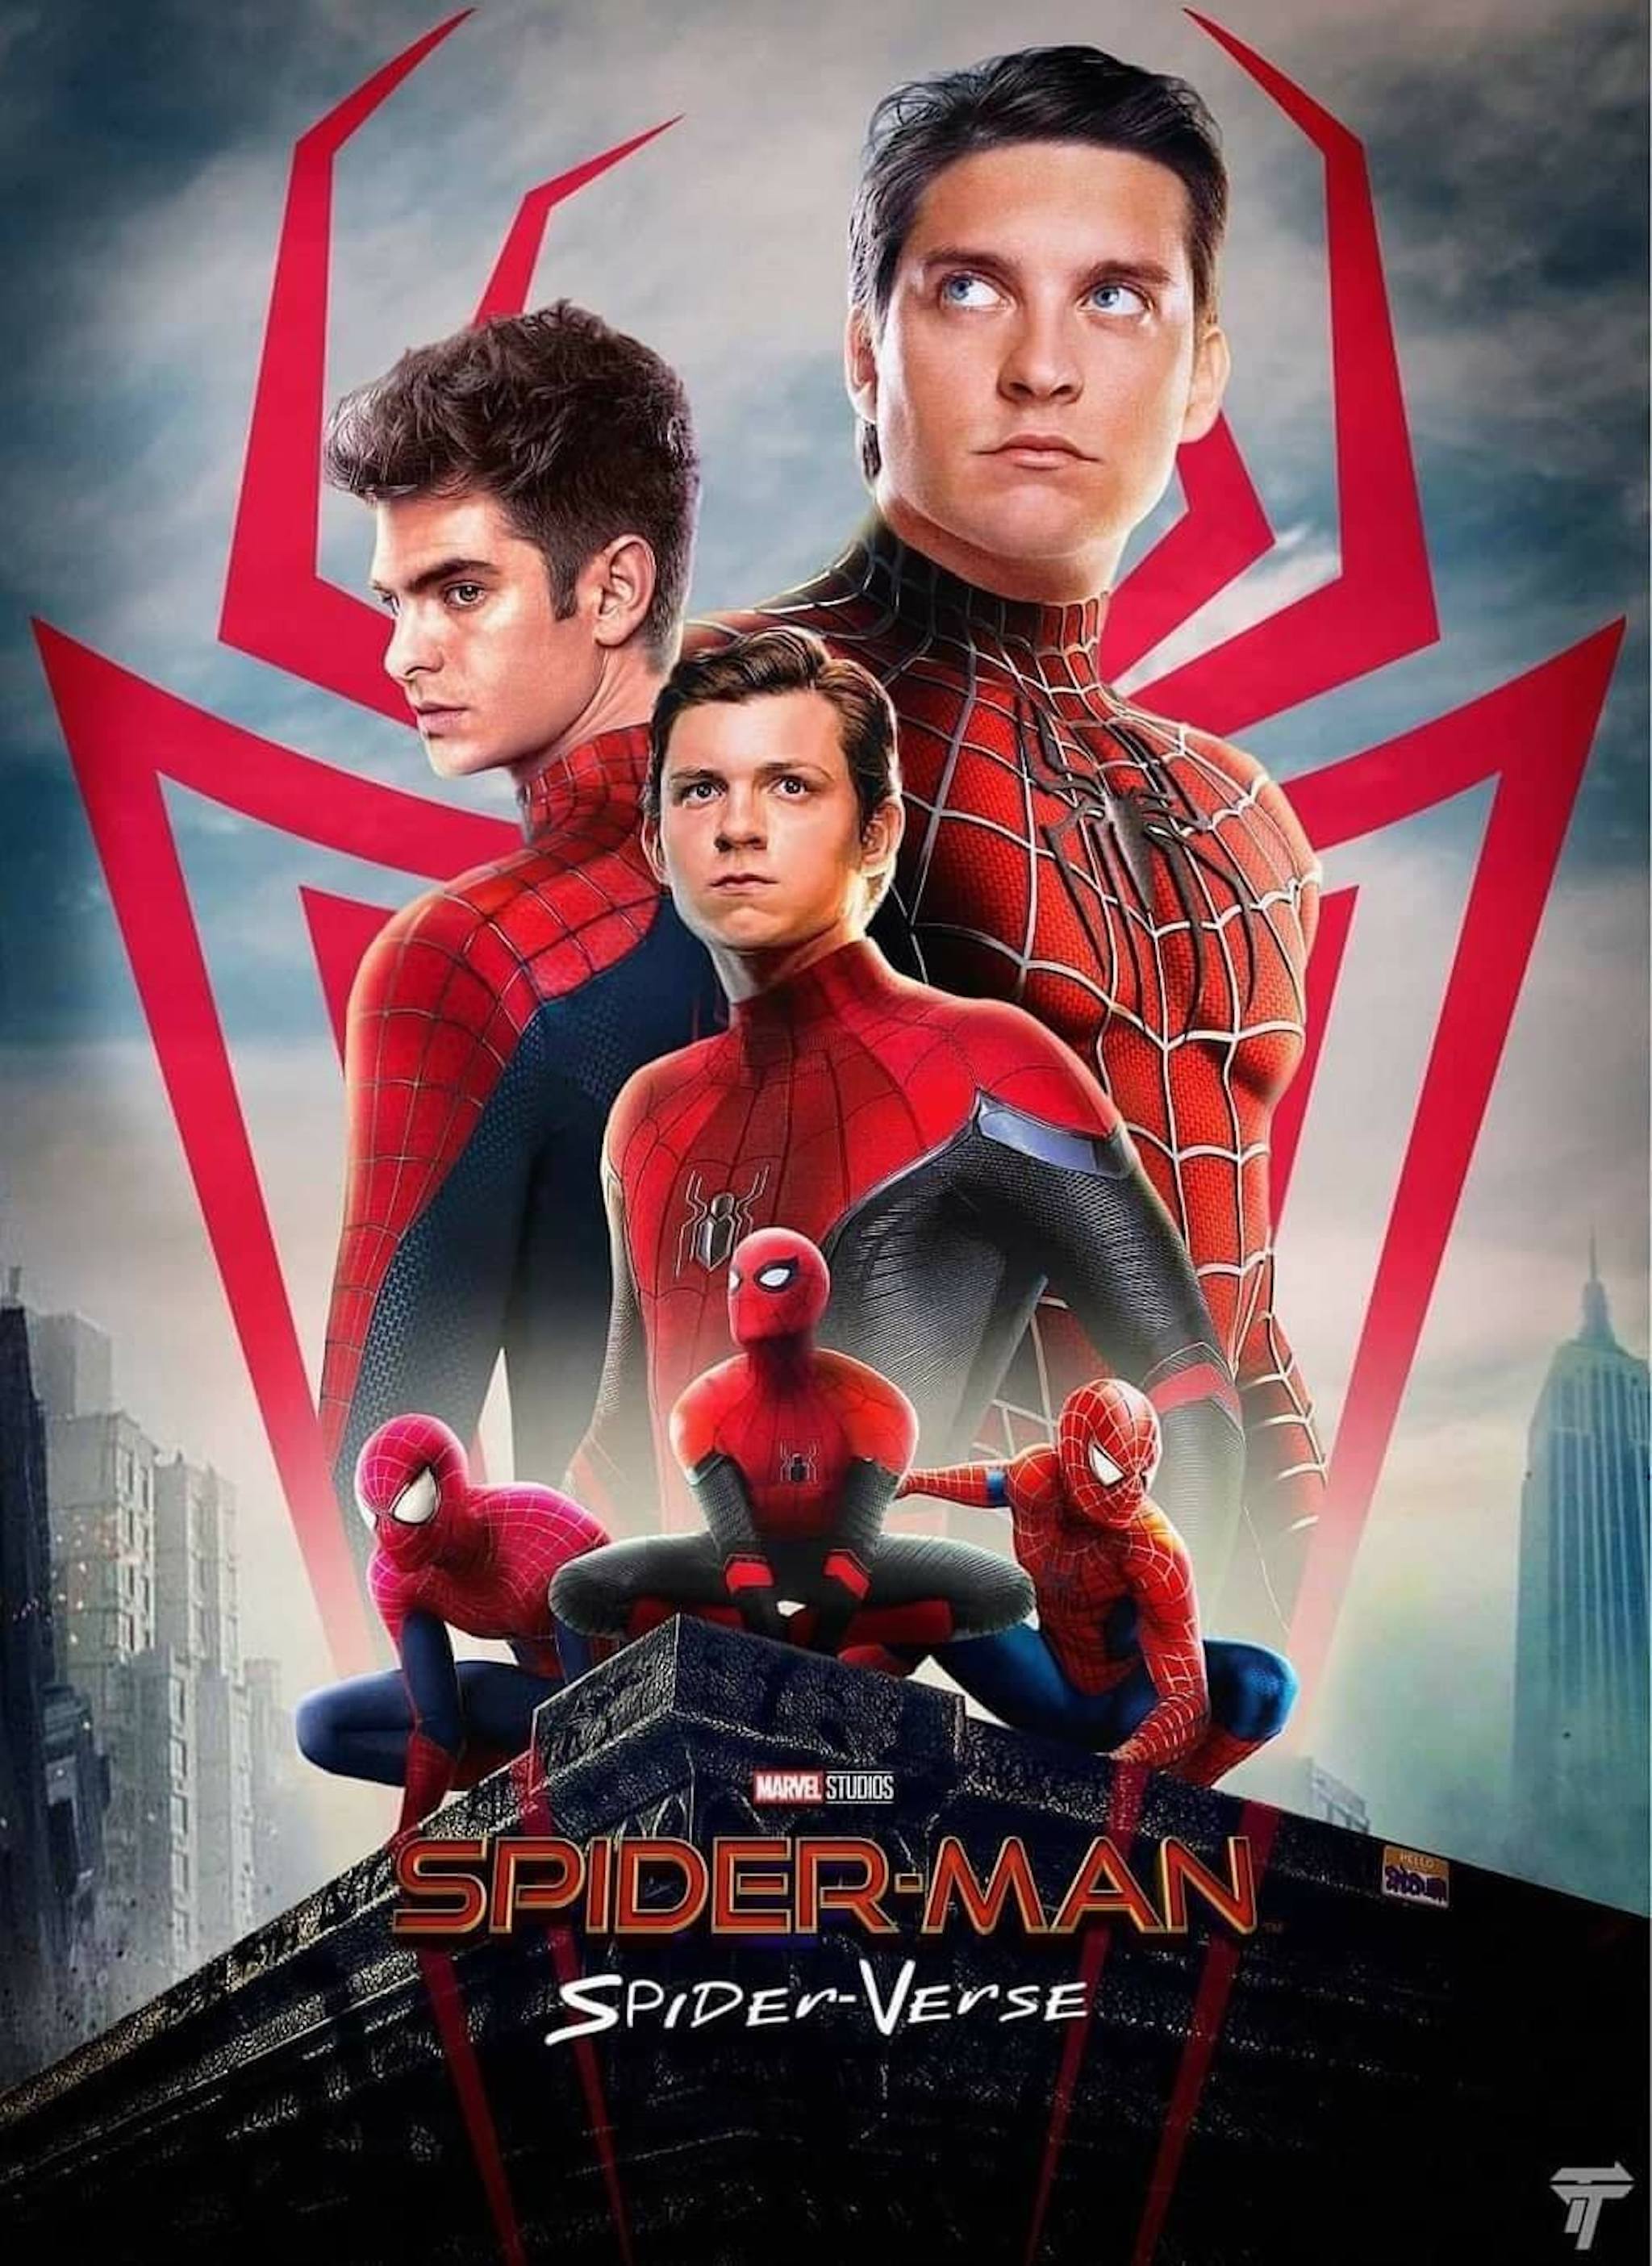 Spider Man: Xem hình ảnh liên quan đến Spider Man và chuẩn bị bị cuốn hút vào thế giới siêu anh hùng của Marvel. Cùng chiêm ngưỡng người nhện với tốc độ và sức mạnh phi thường bằng hình ảnh chân thực và đầy cảm xúc.